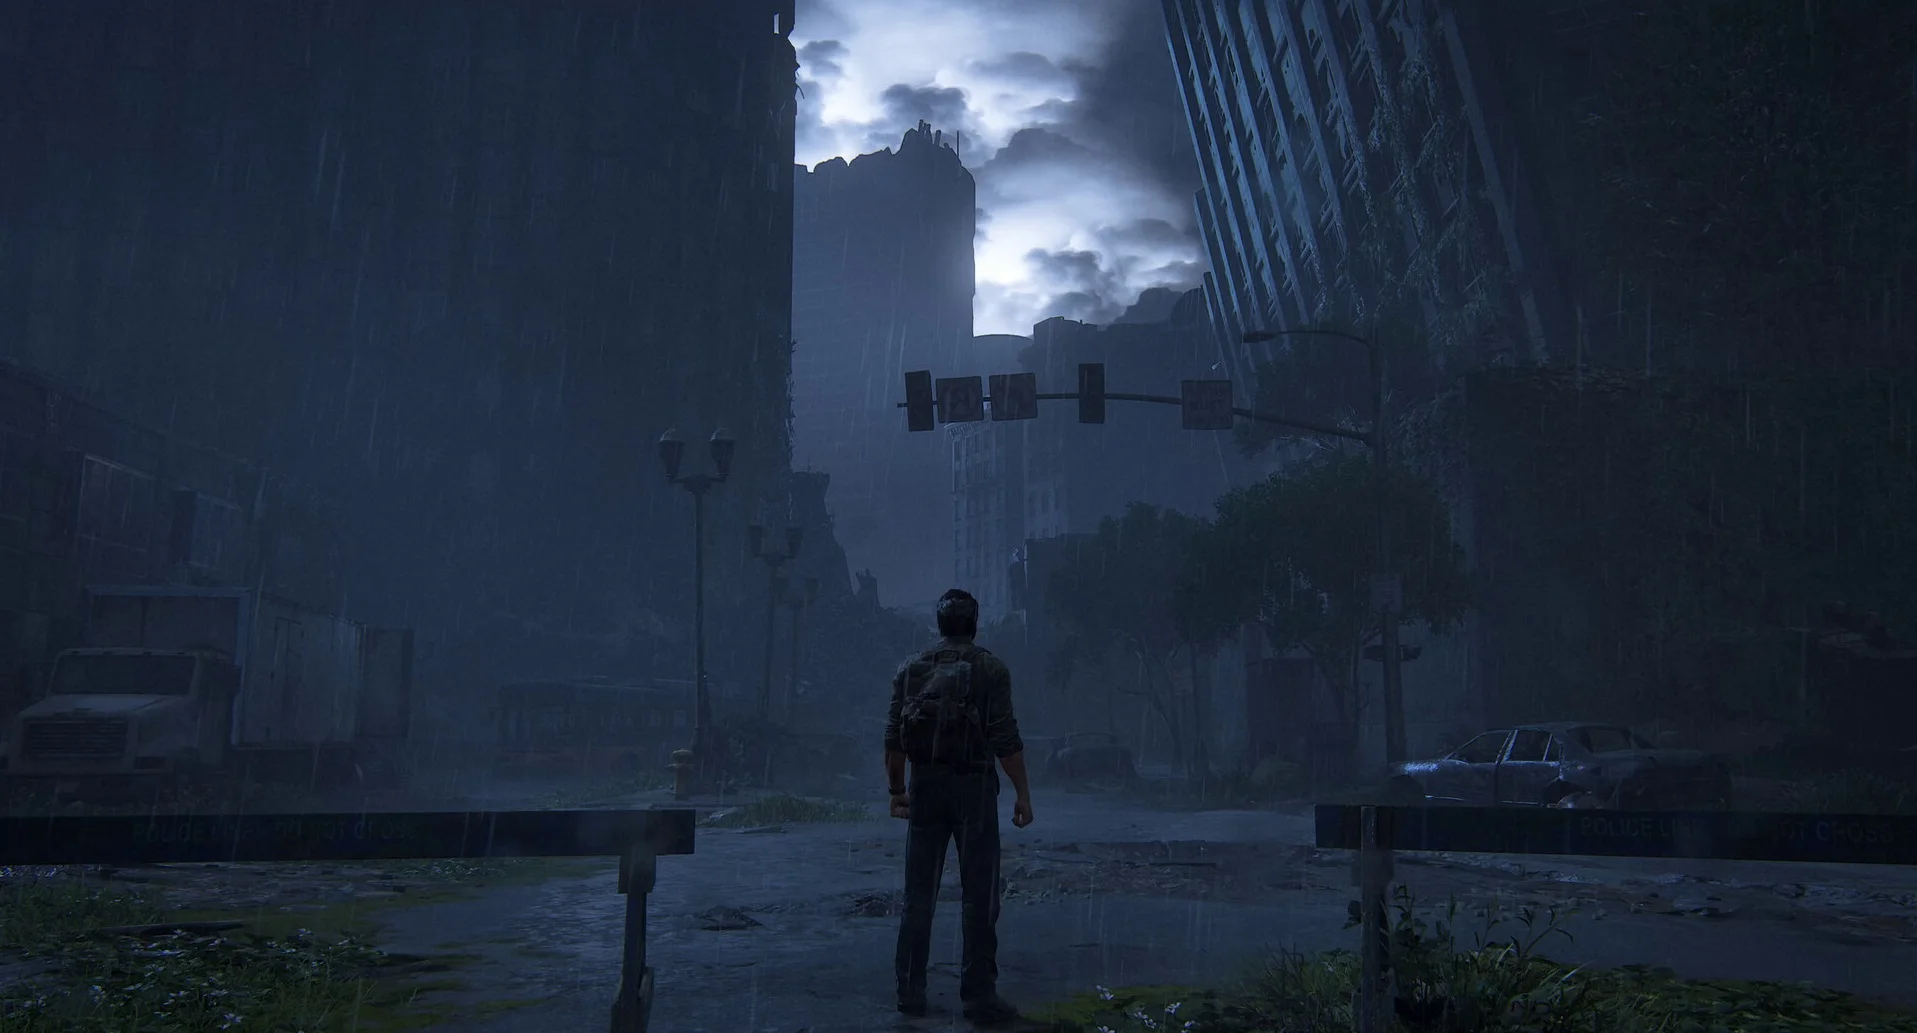 Графику The Last of Us для PC и PS5 сравнили между собой. Результат вышел весьма неожиданным